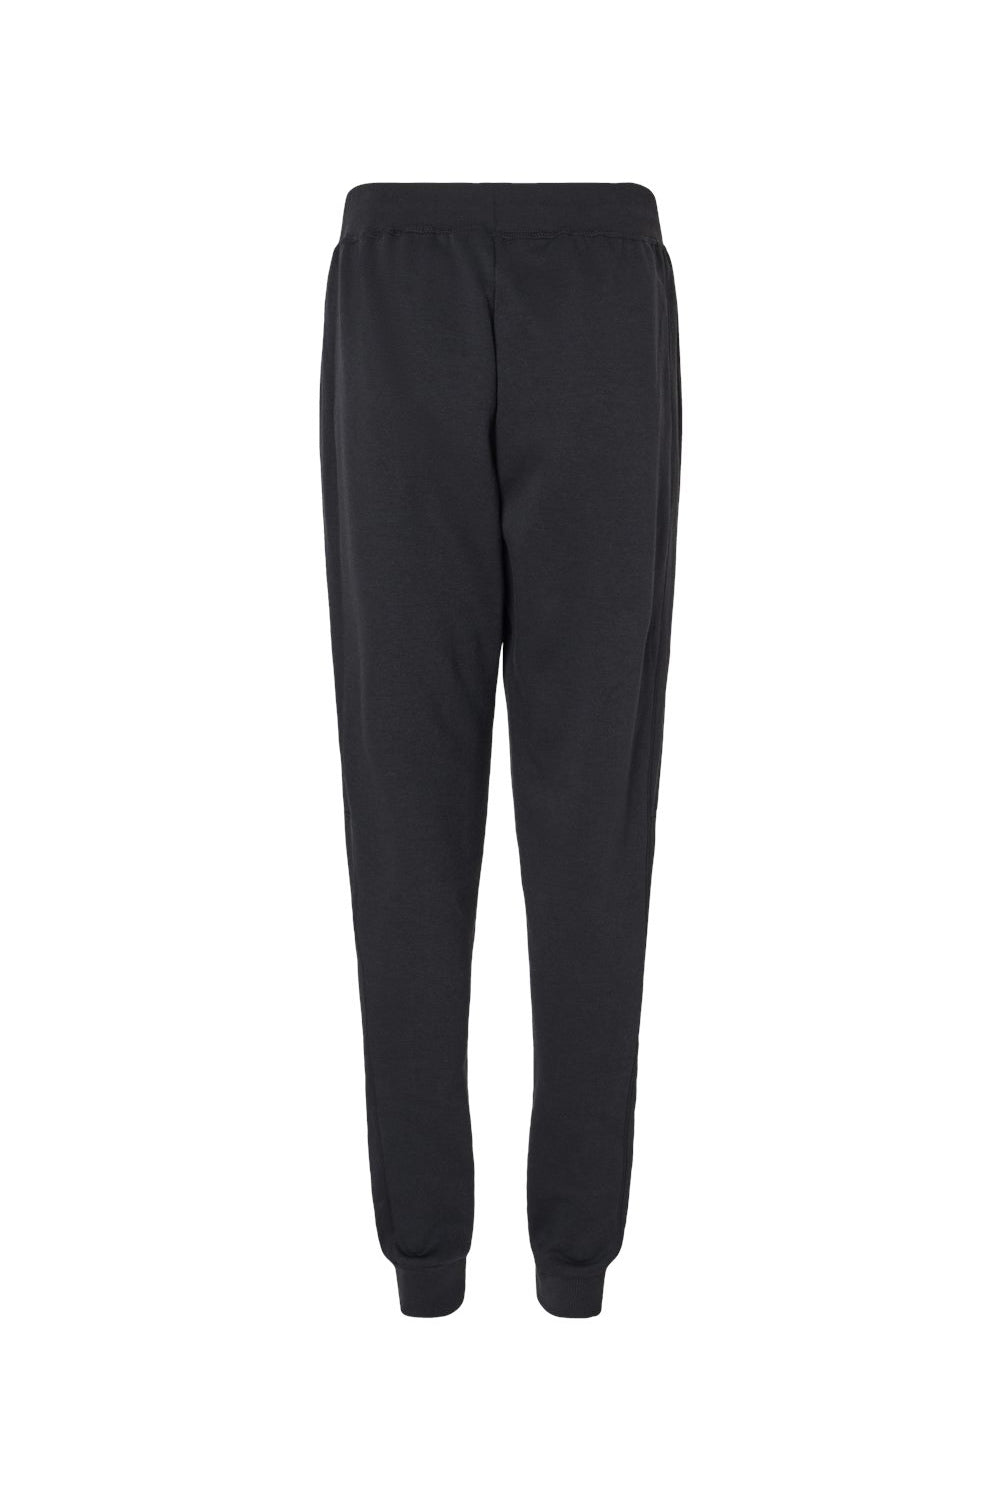 Augusta Sportswear 6868 Mens Eco Revive 3 Season Fleece Jogger Sweatpants w/ Pockets Black Flat Back